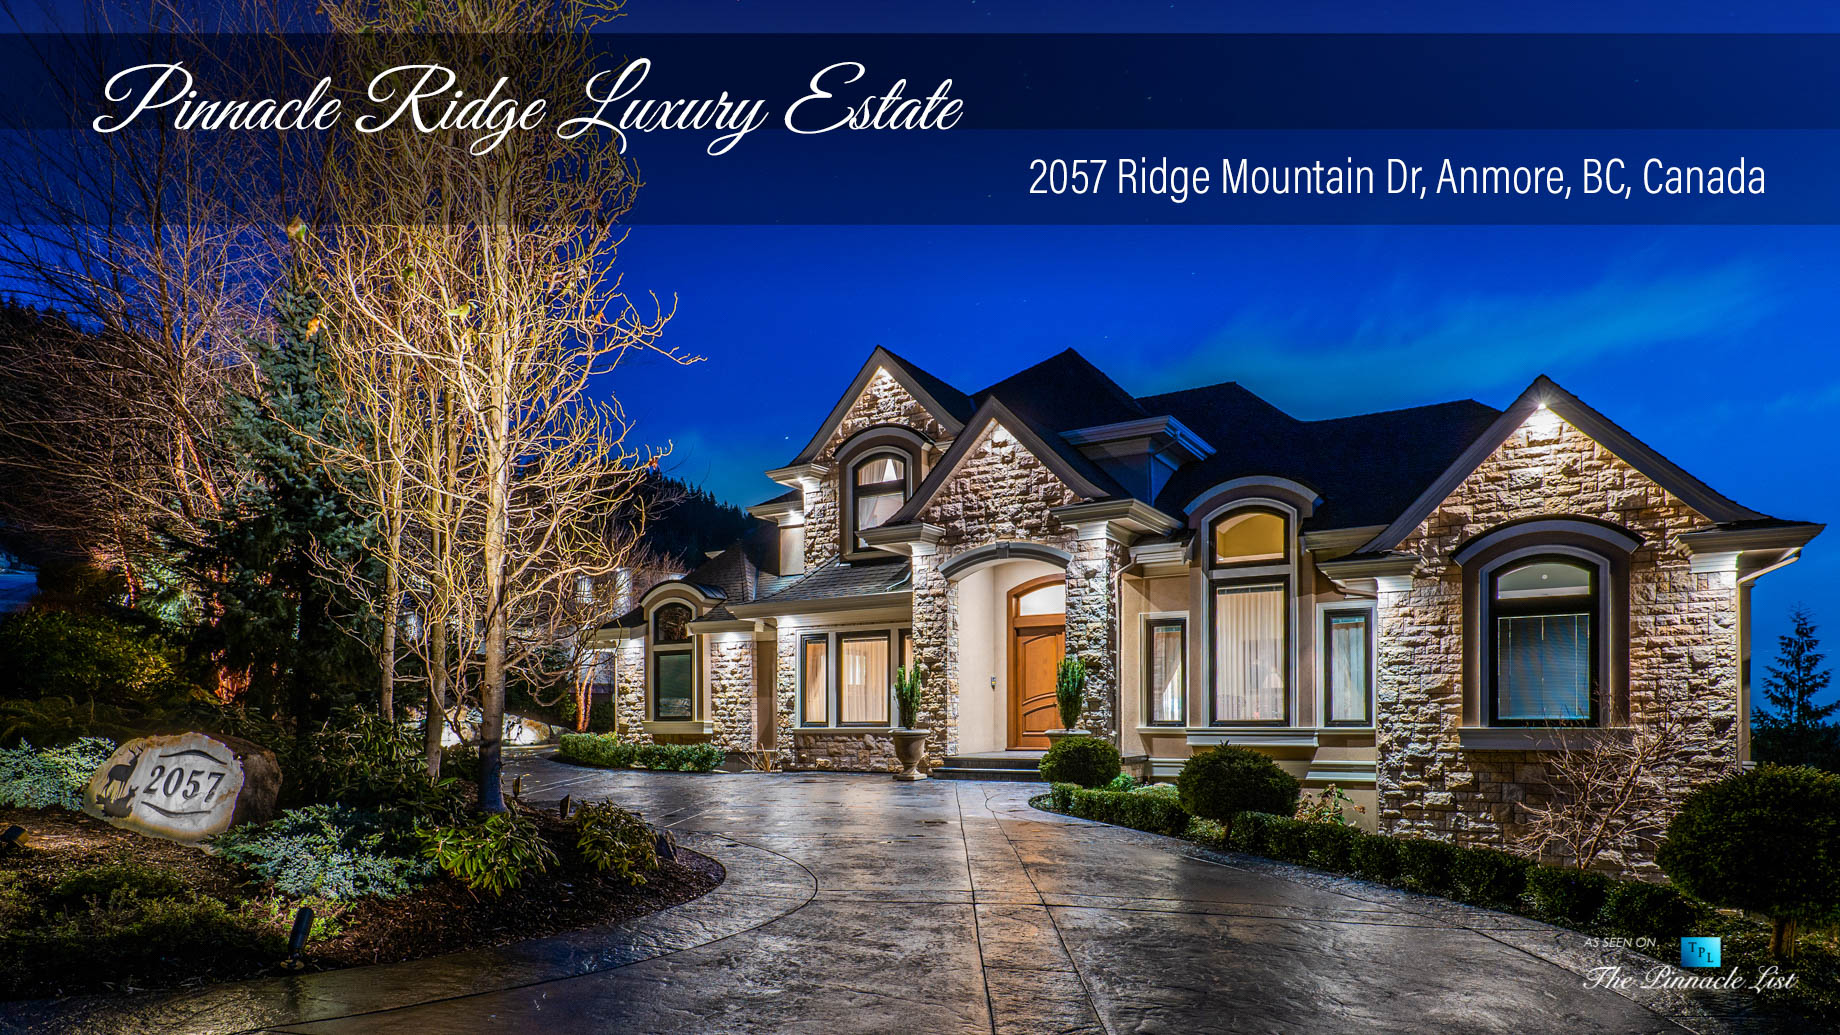 Pinnacle Ridge Luxury Estate - 2057 Ridge Mountain Dr, Anmore, BC, Canada